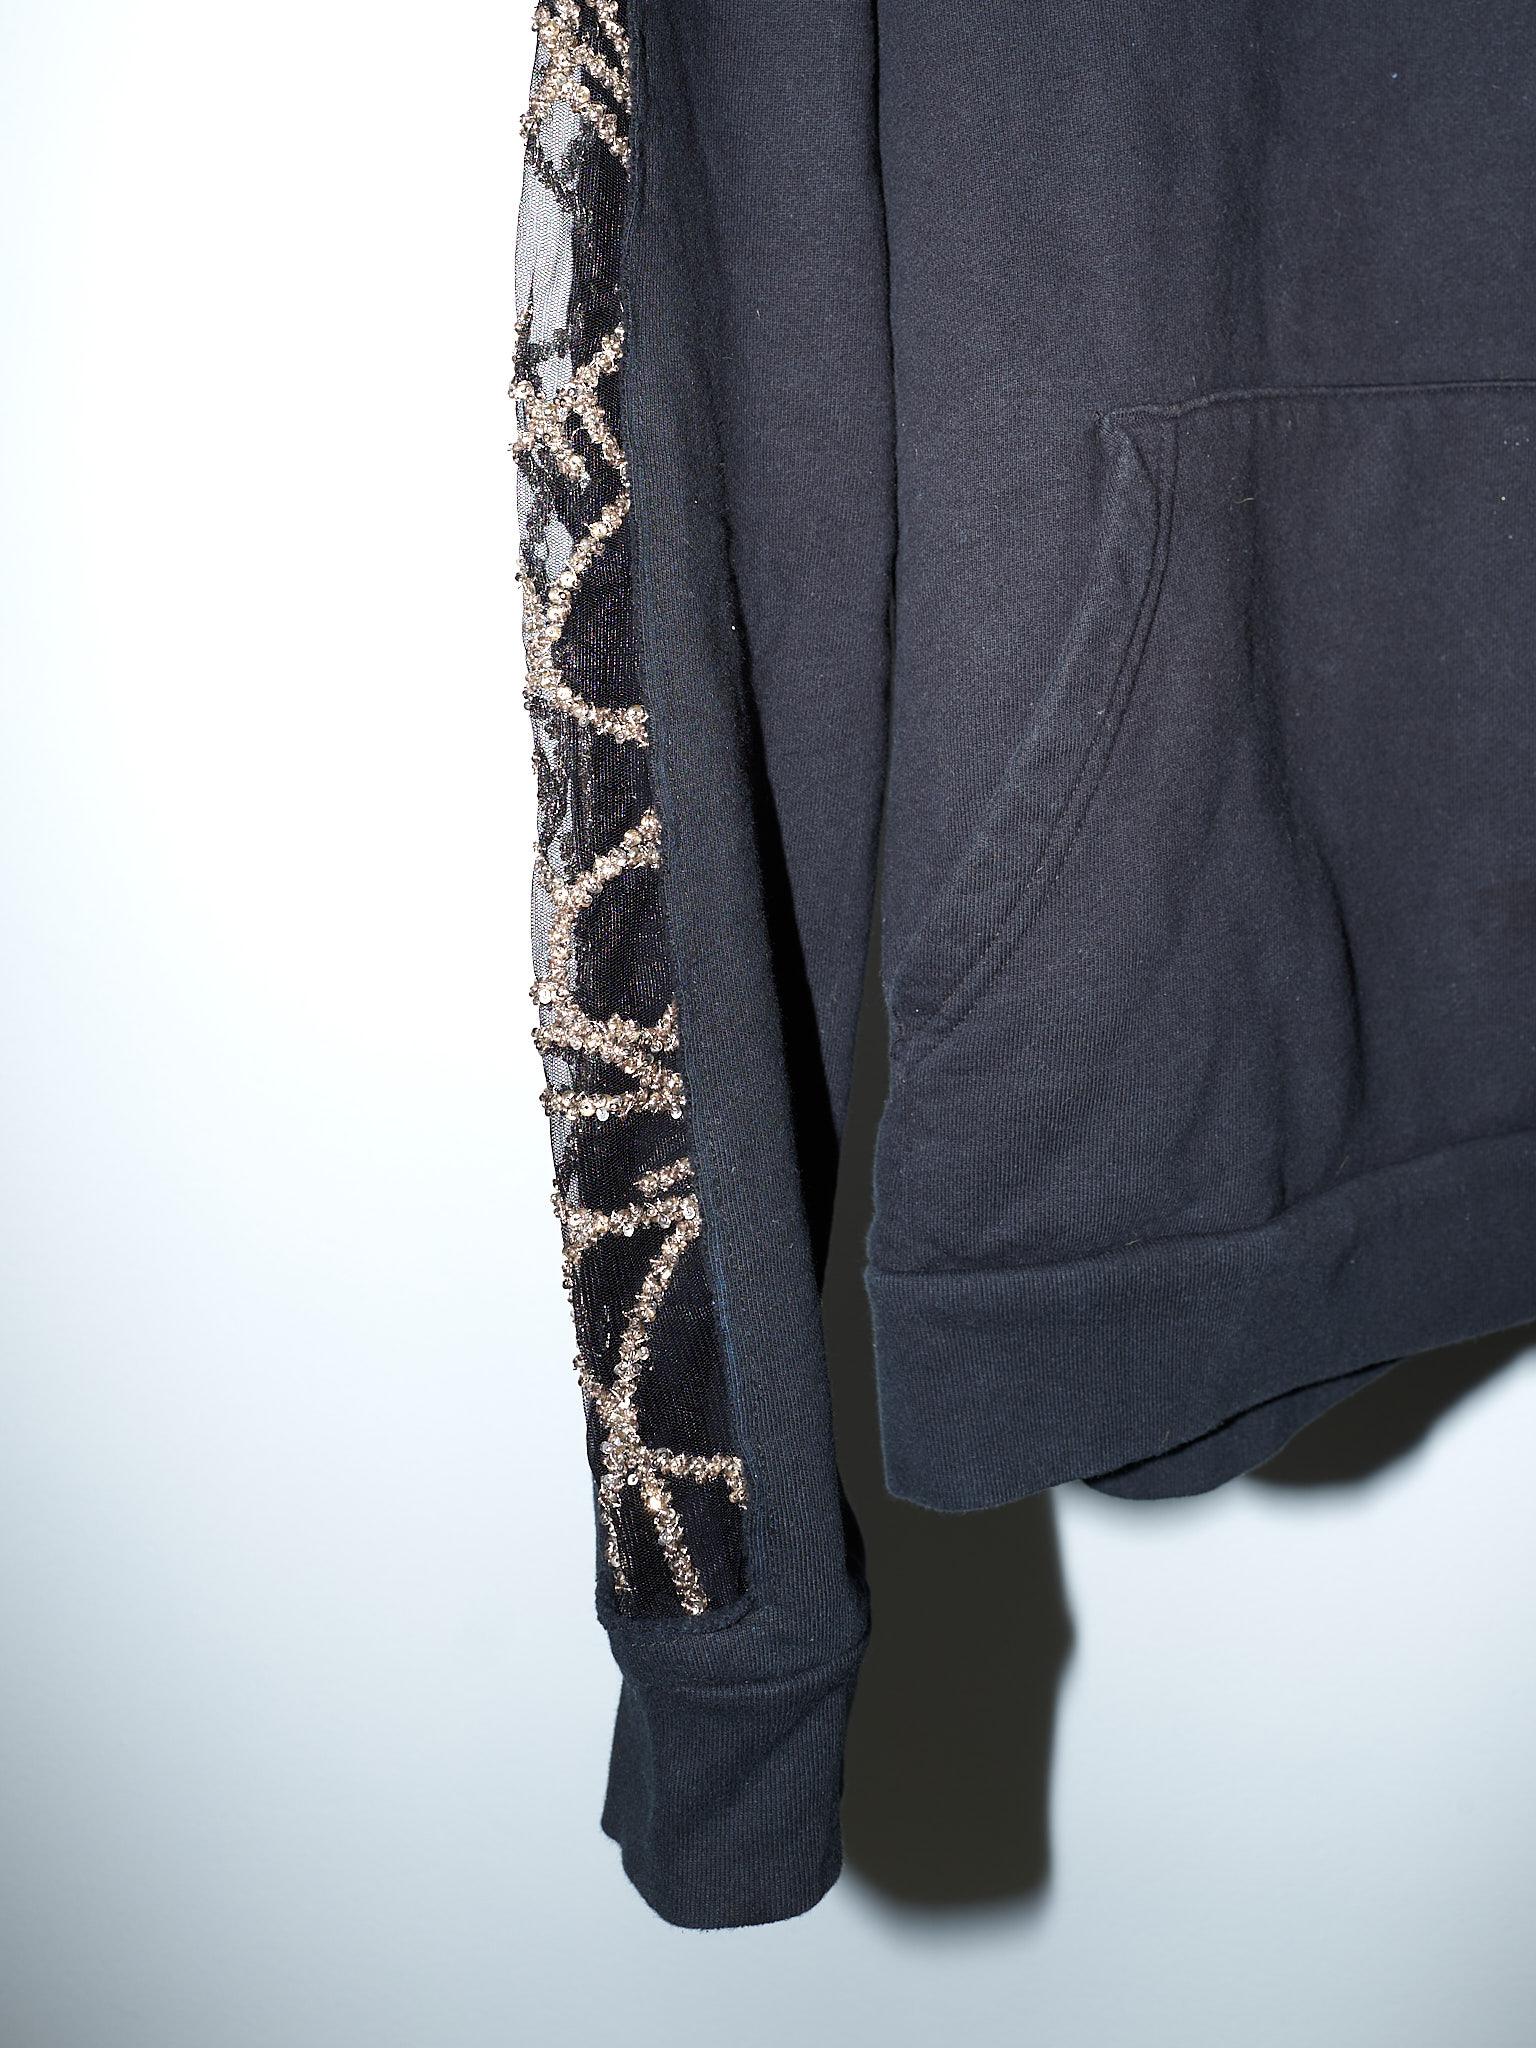 Black Hoodie Sweatshirt Embellished Chrystal Black J Dauphin 2